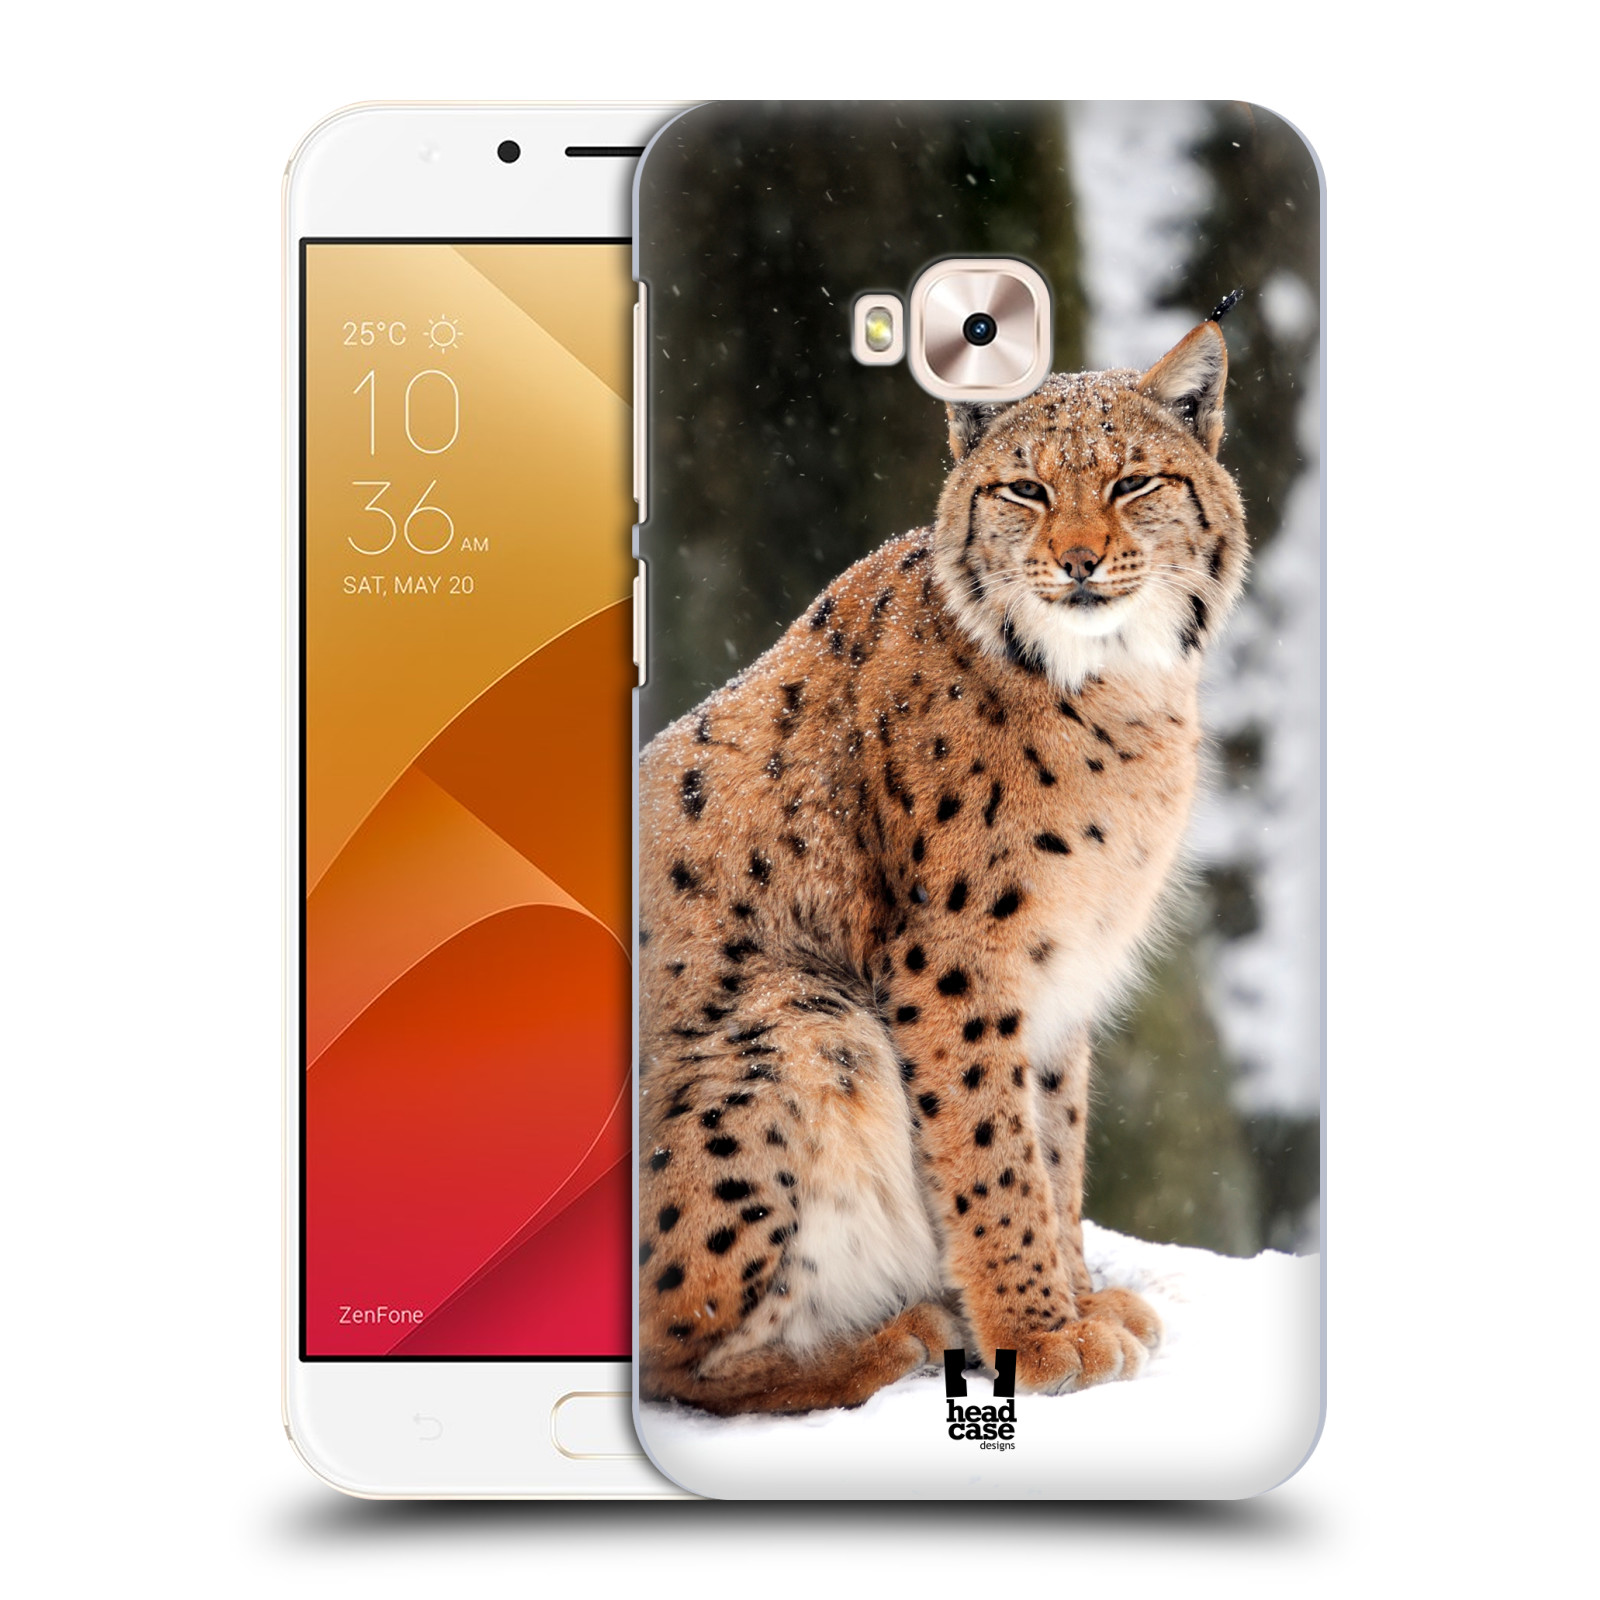 HEAD CASE plastový obal na mobil Asus Zenfone 4 Selfie Pro ZD552KL vzor slavná zvířata foto rys